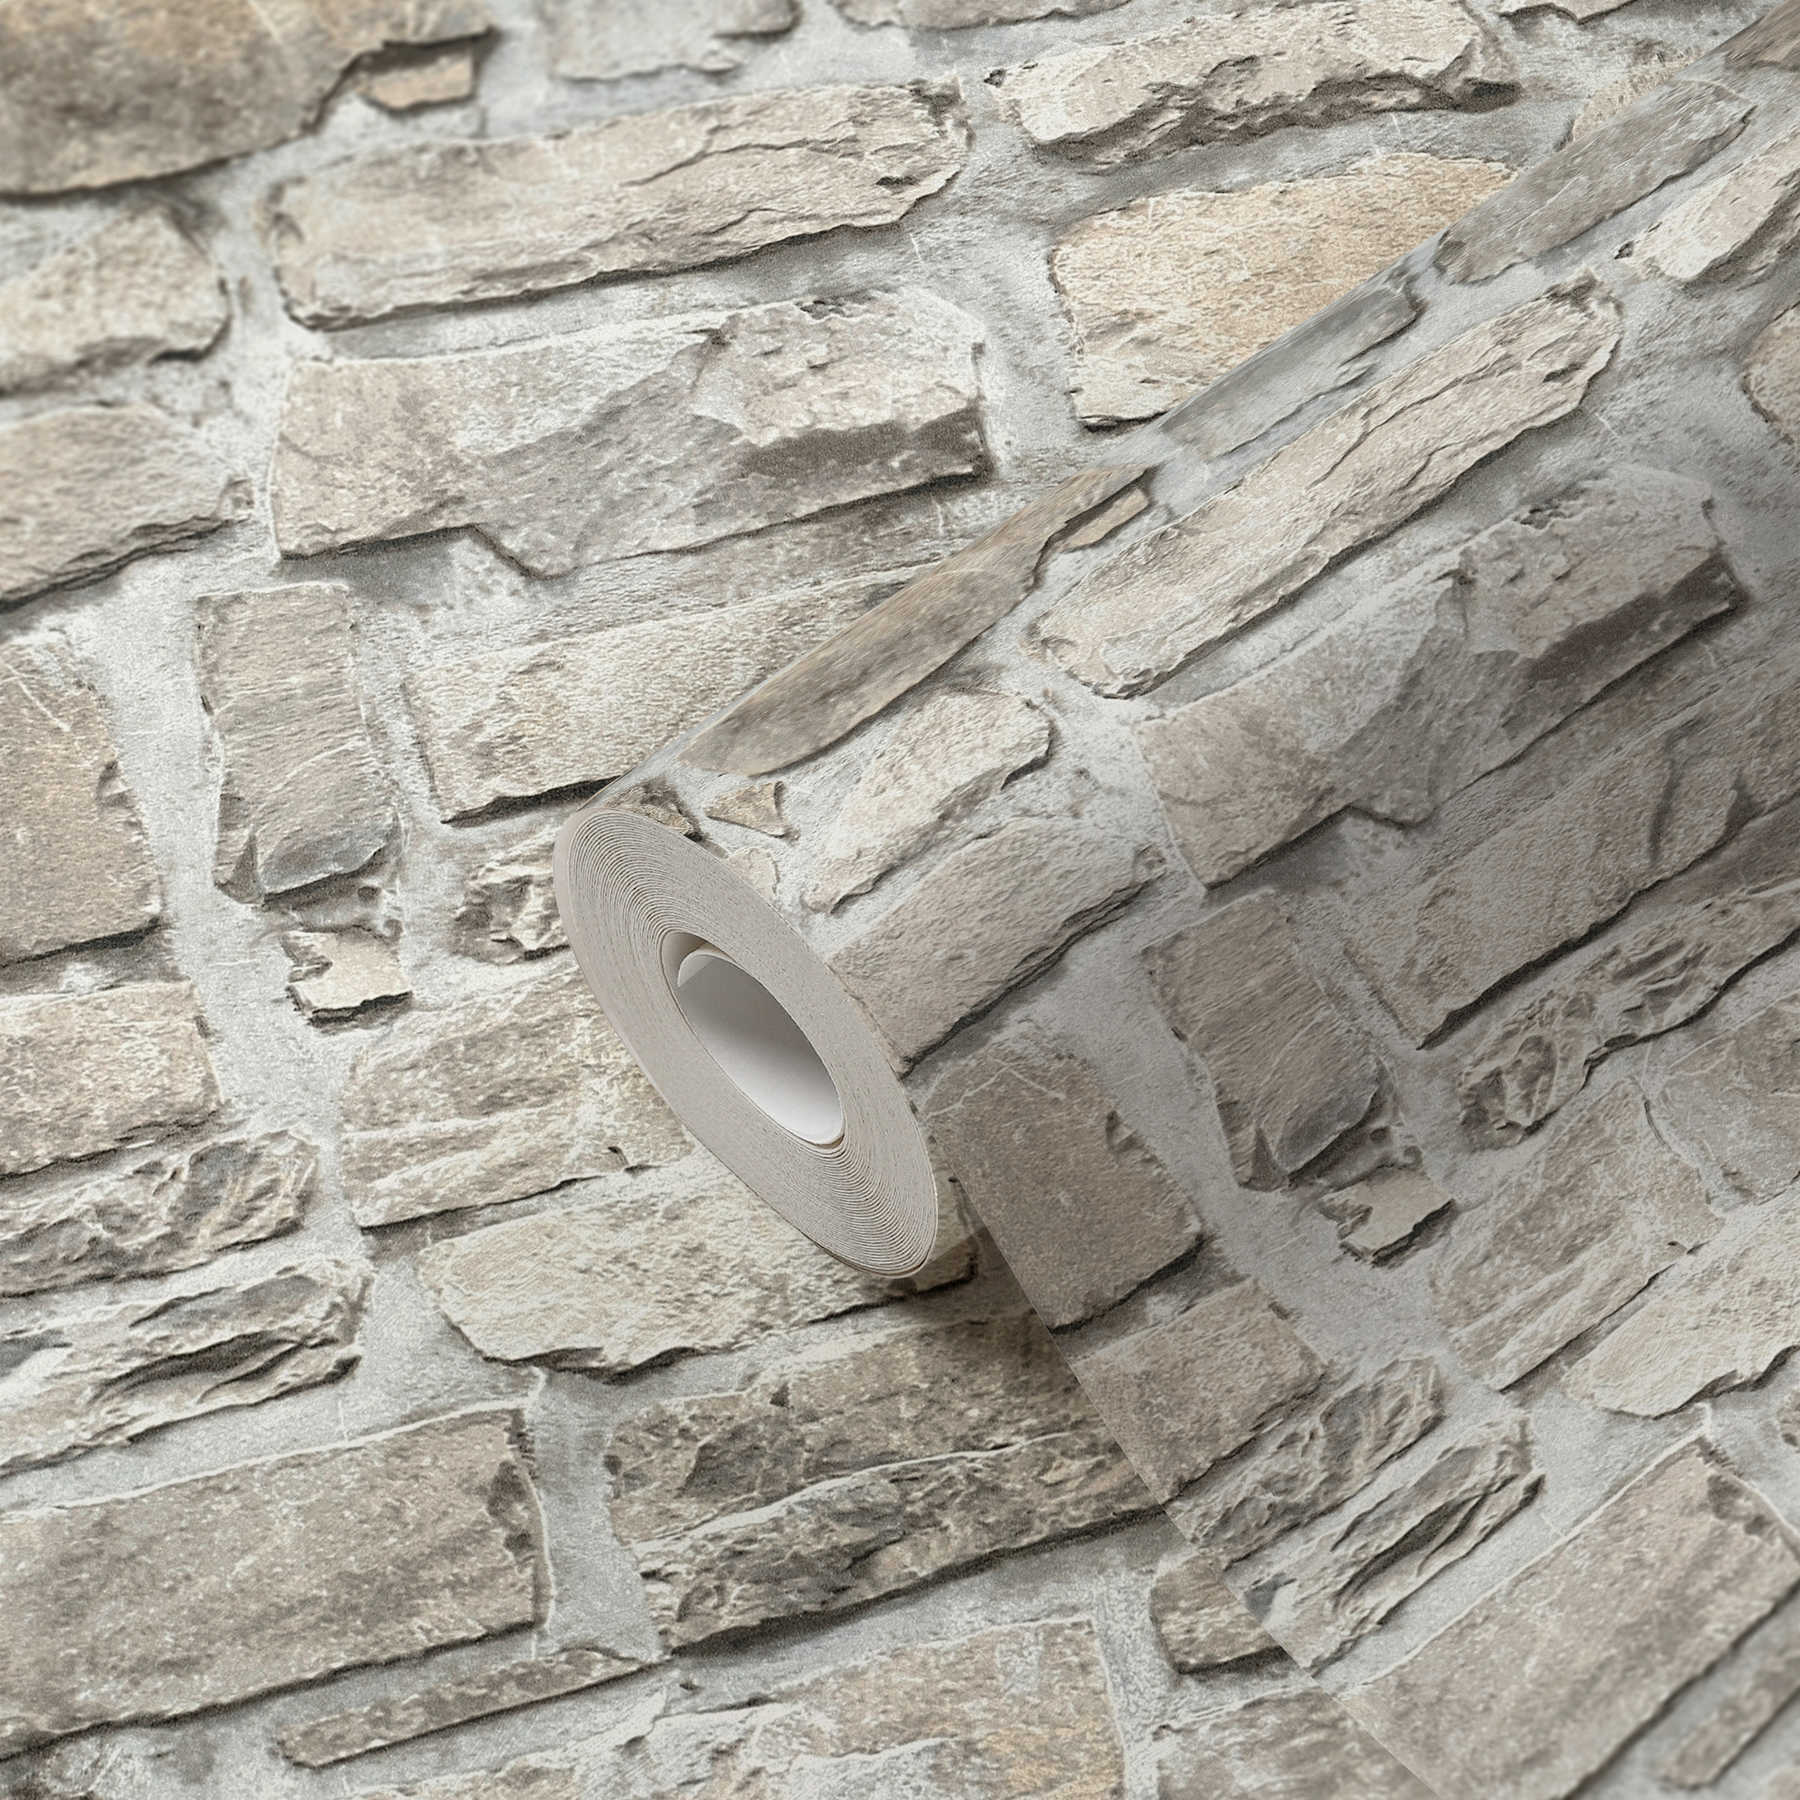             Papier peint pierre avec maçonnerie en pierre naturelle - gris, beige
        